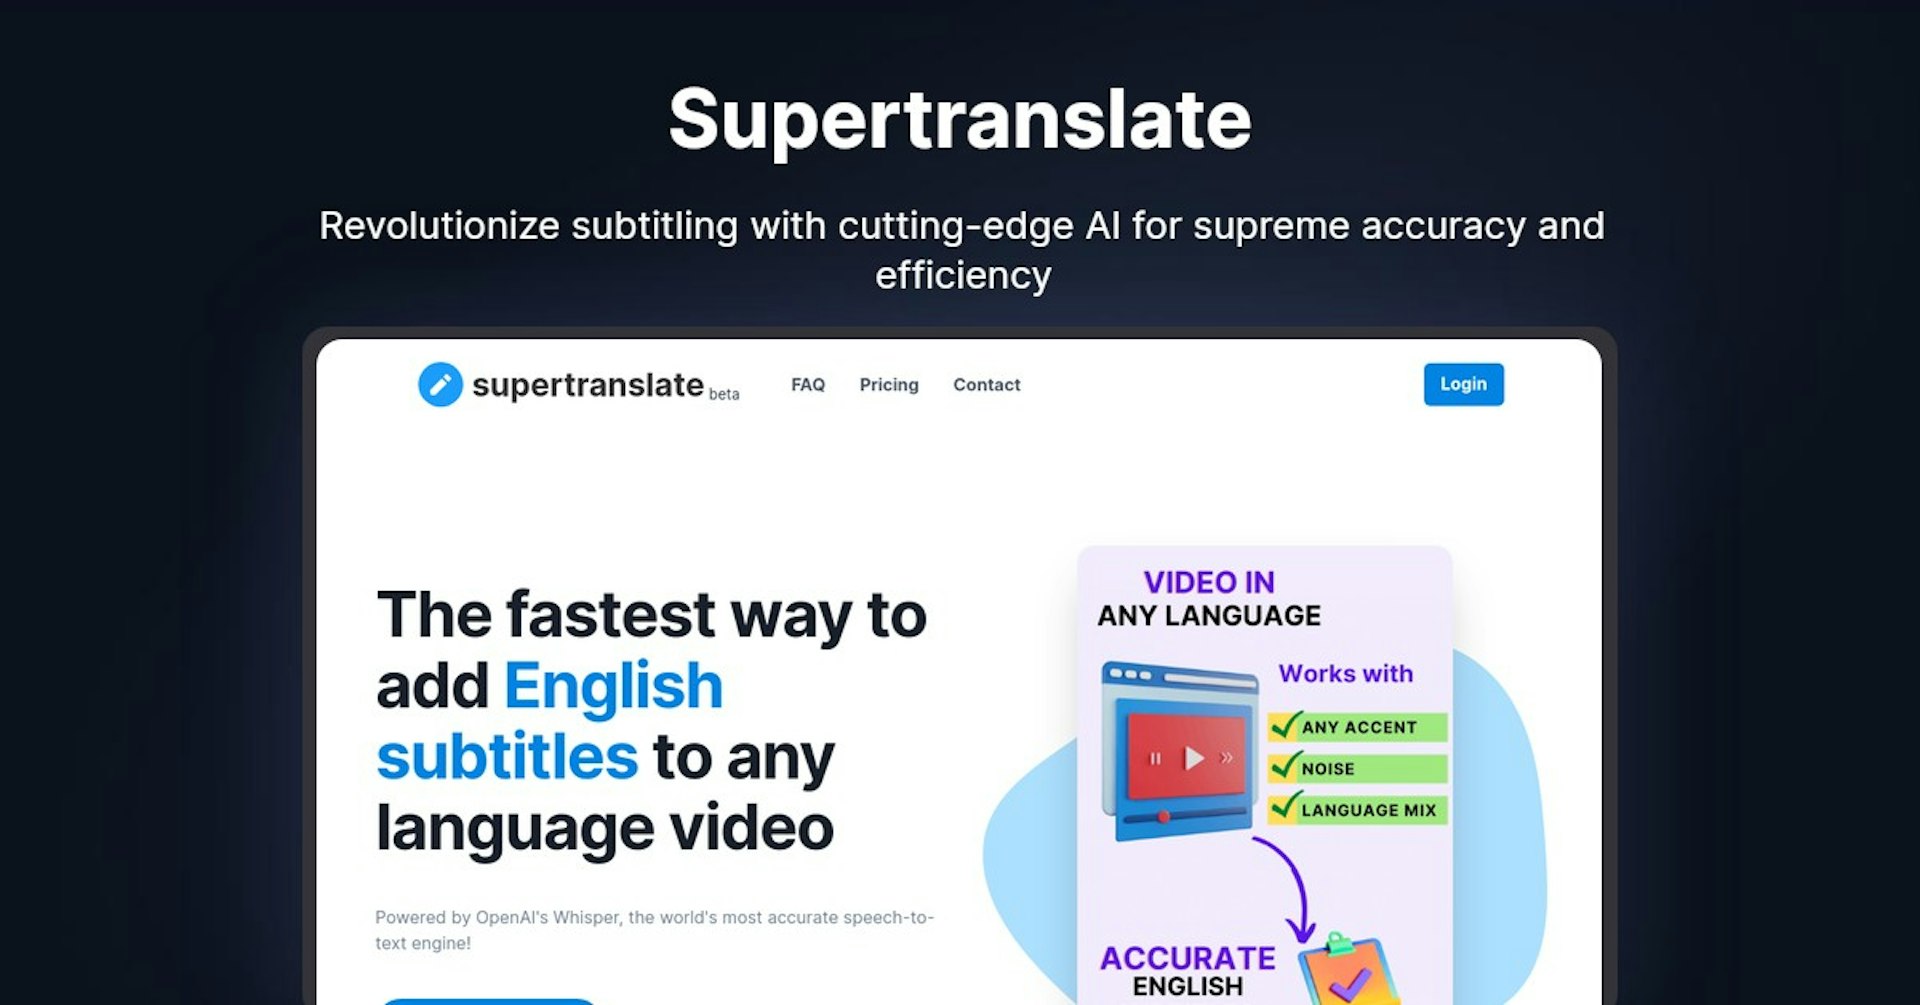 Supertranslate